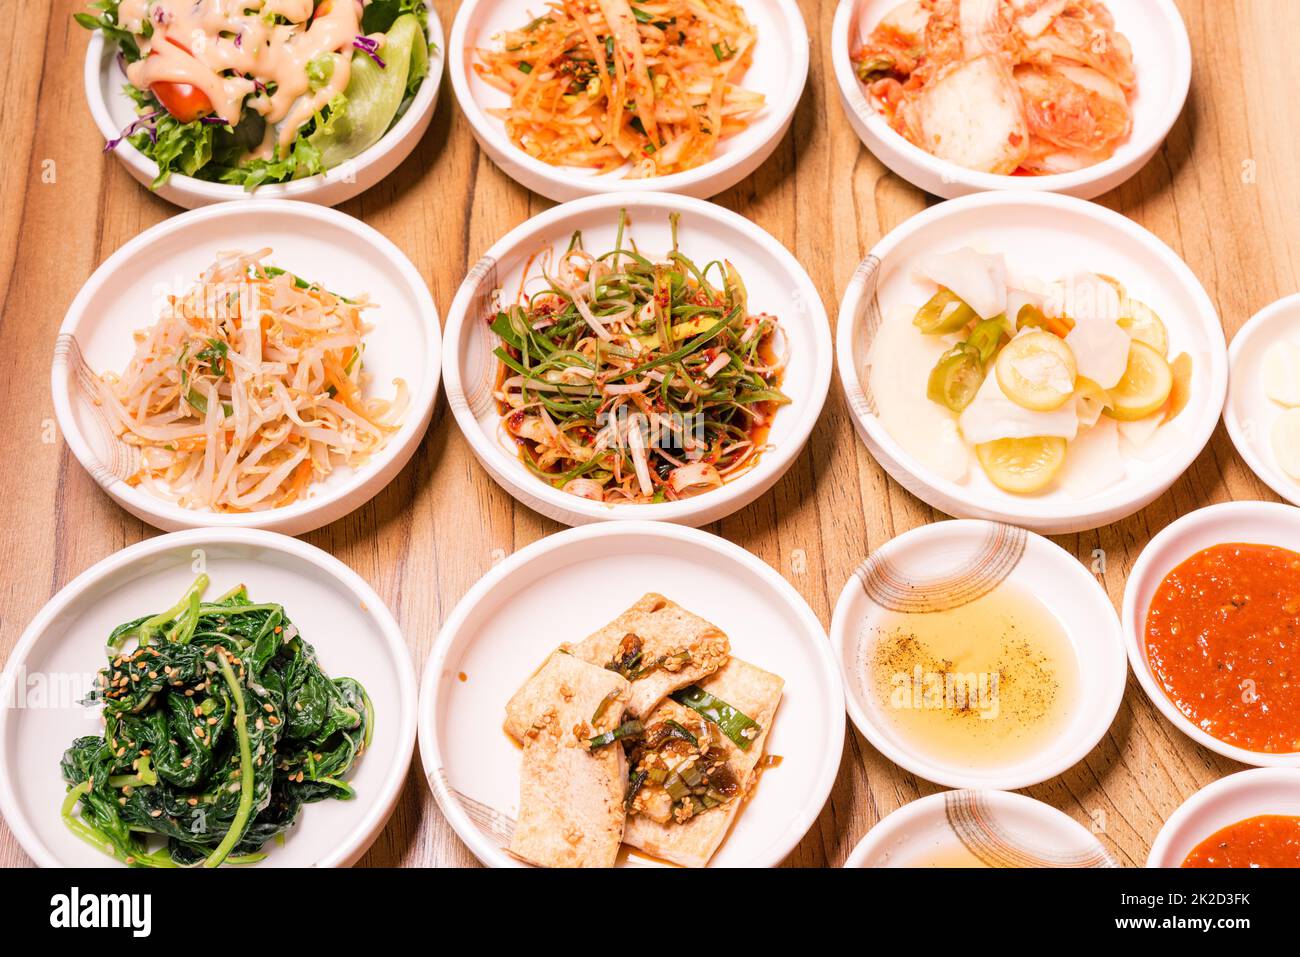 Légumes cornichons coréens ou radis marinés et assaisonnement dans un bol Banque D'Images